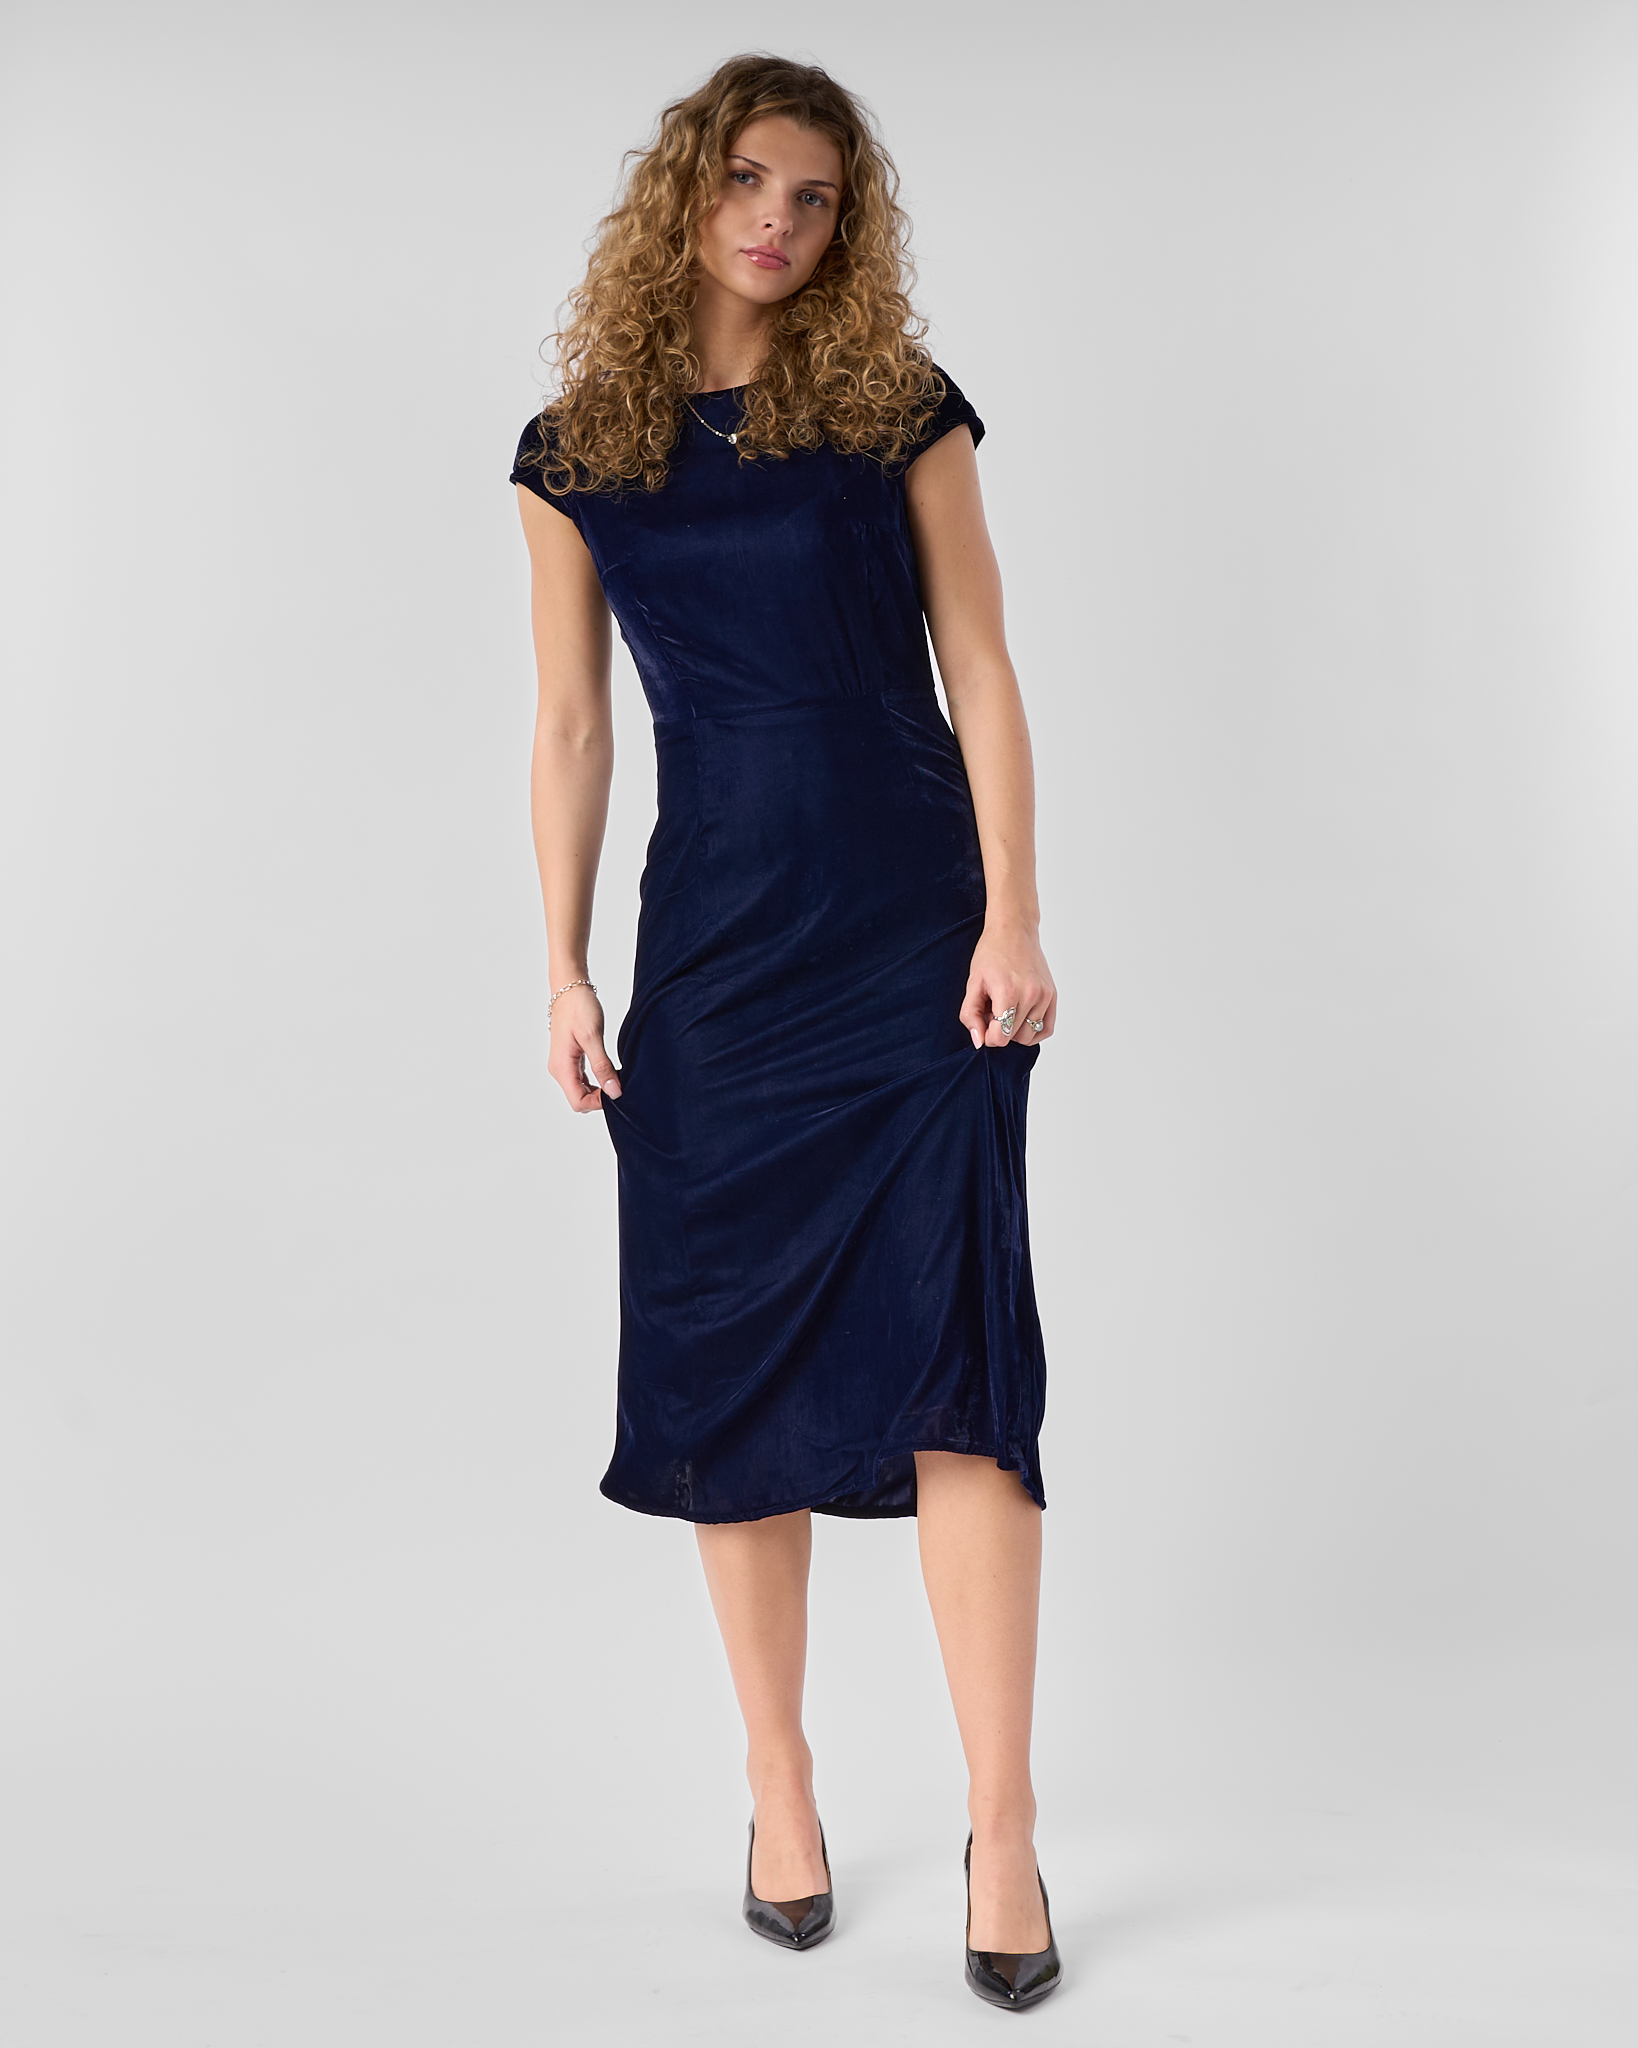 Amara Slim-Fit Velvet Dress with A-Line Skirt and Elegant Yoke Detail